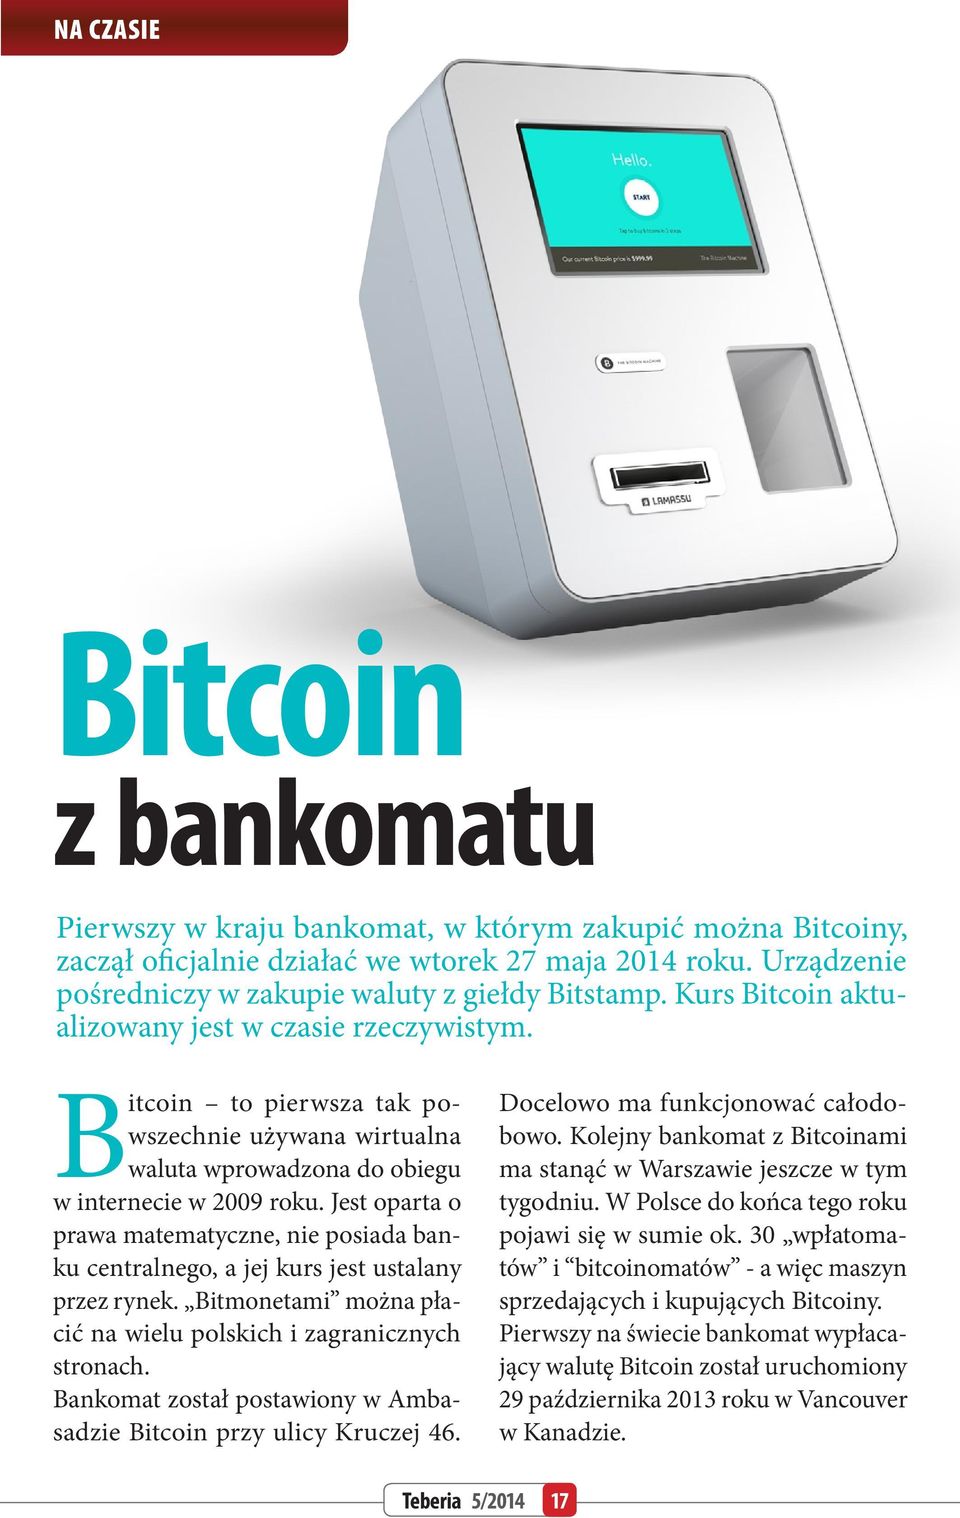 Bitcoin to pierwsza tak powszechnie używana wirtualna waluta wprowadzona do obiegu w internecie w 2009 roku.